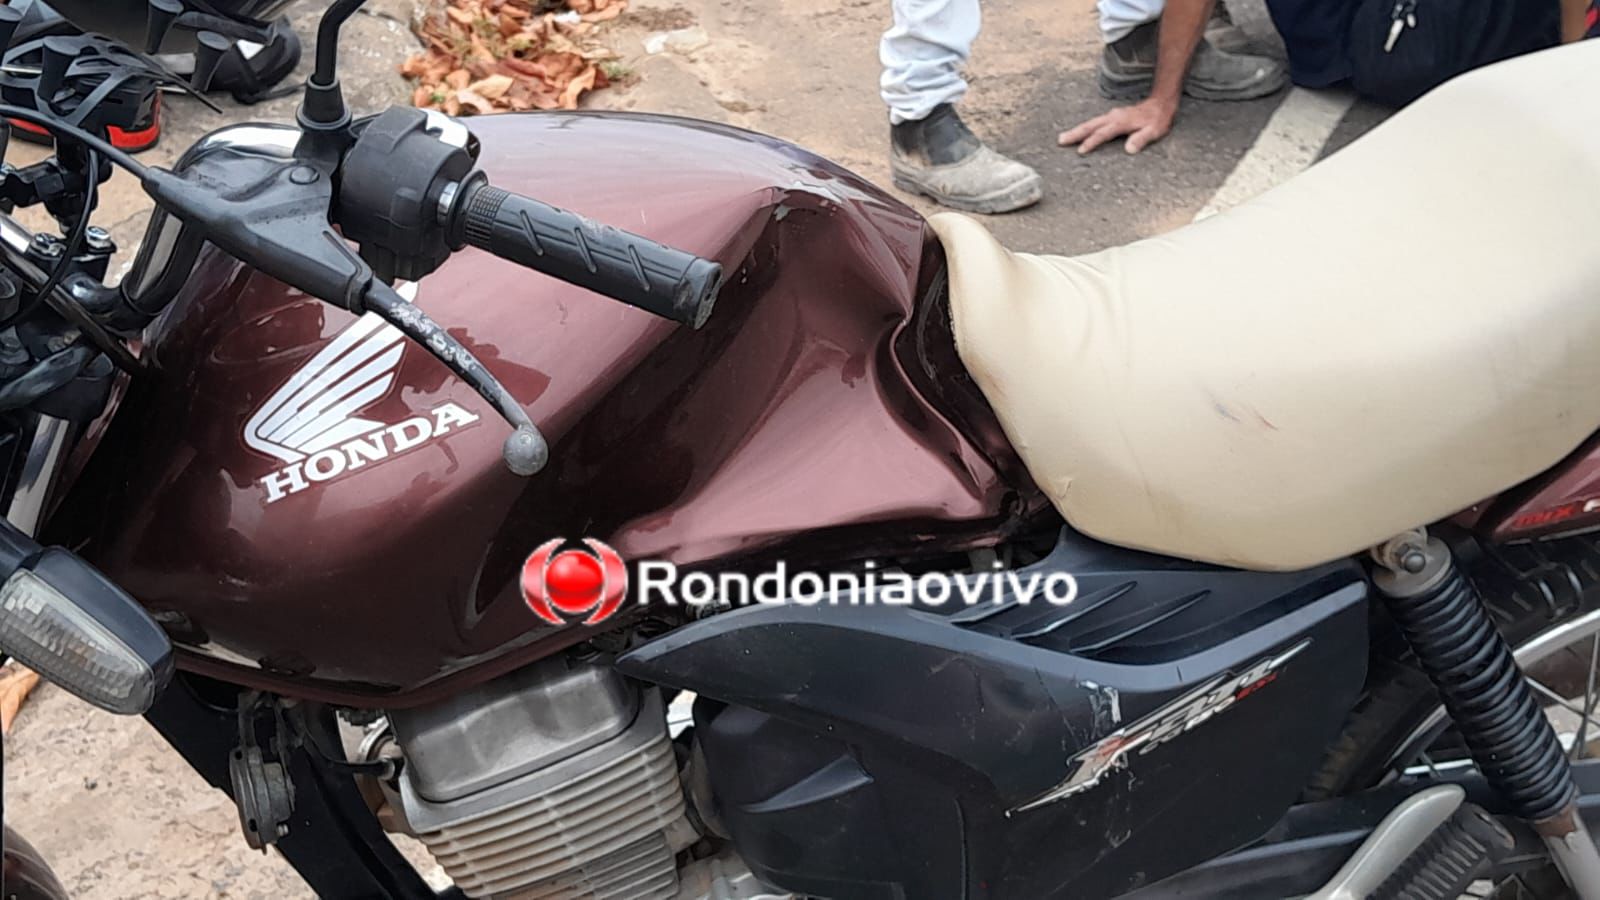 URGENTE: Idoso tem gravíssima fratura exposta na perna após colisão entre motos na Abunã 